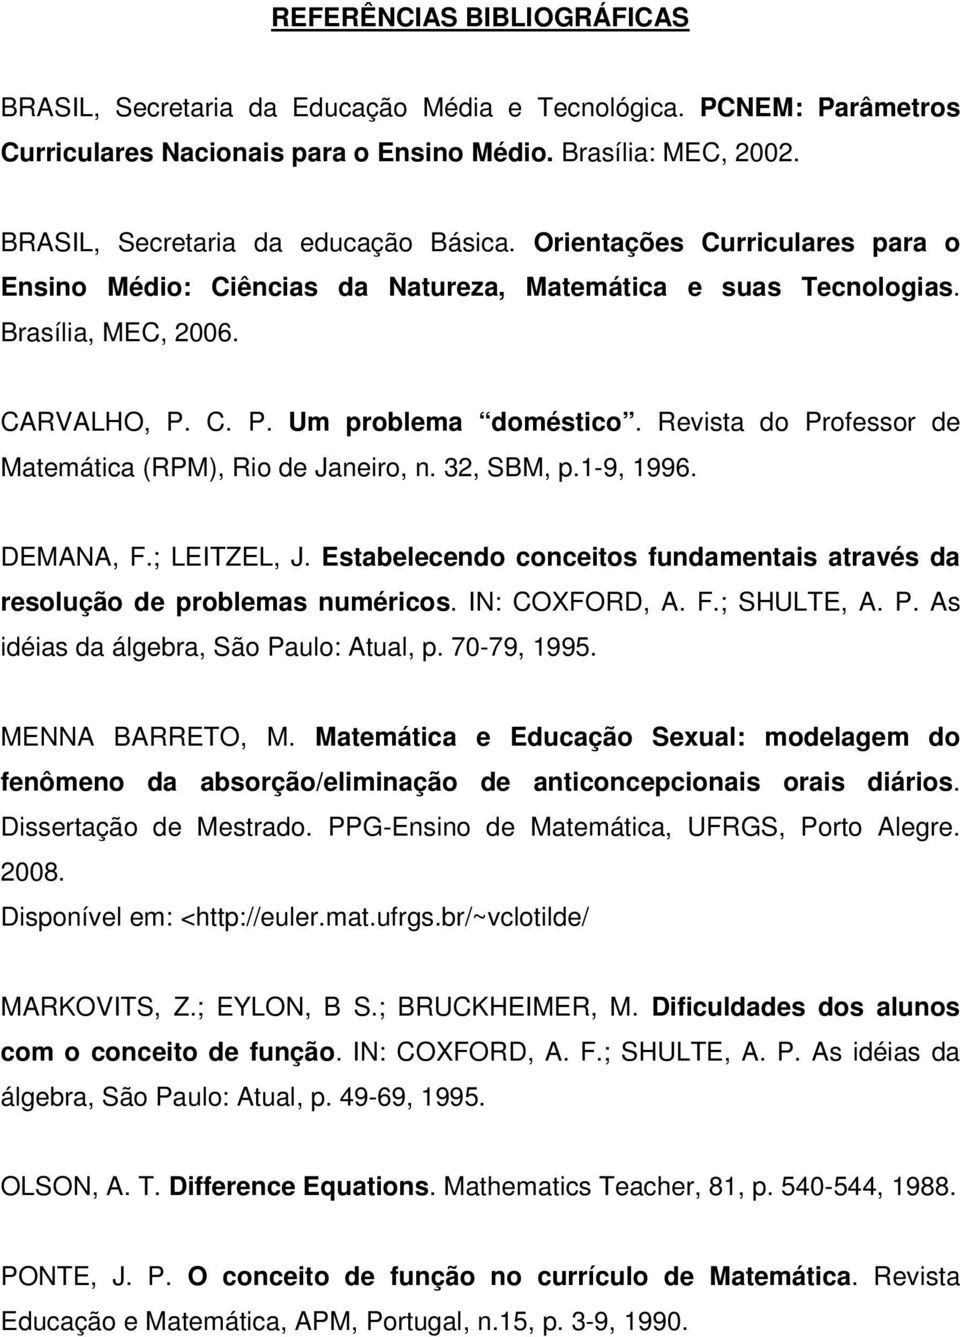 Revista do Professor de Matemática (RPM), Rio de Janeiro, n. 32, SBM, p.1-9, 1996. DEMANA, F.; LEITZEL, J. Estabelecendo conceitos fundamentais através da resolução de problemas numéricos.